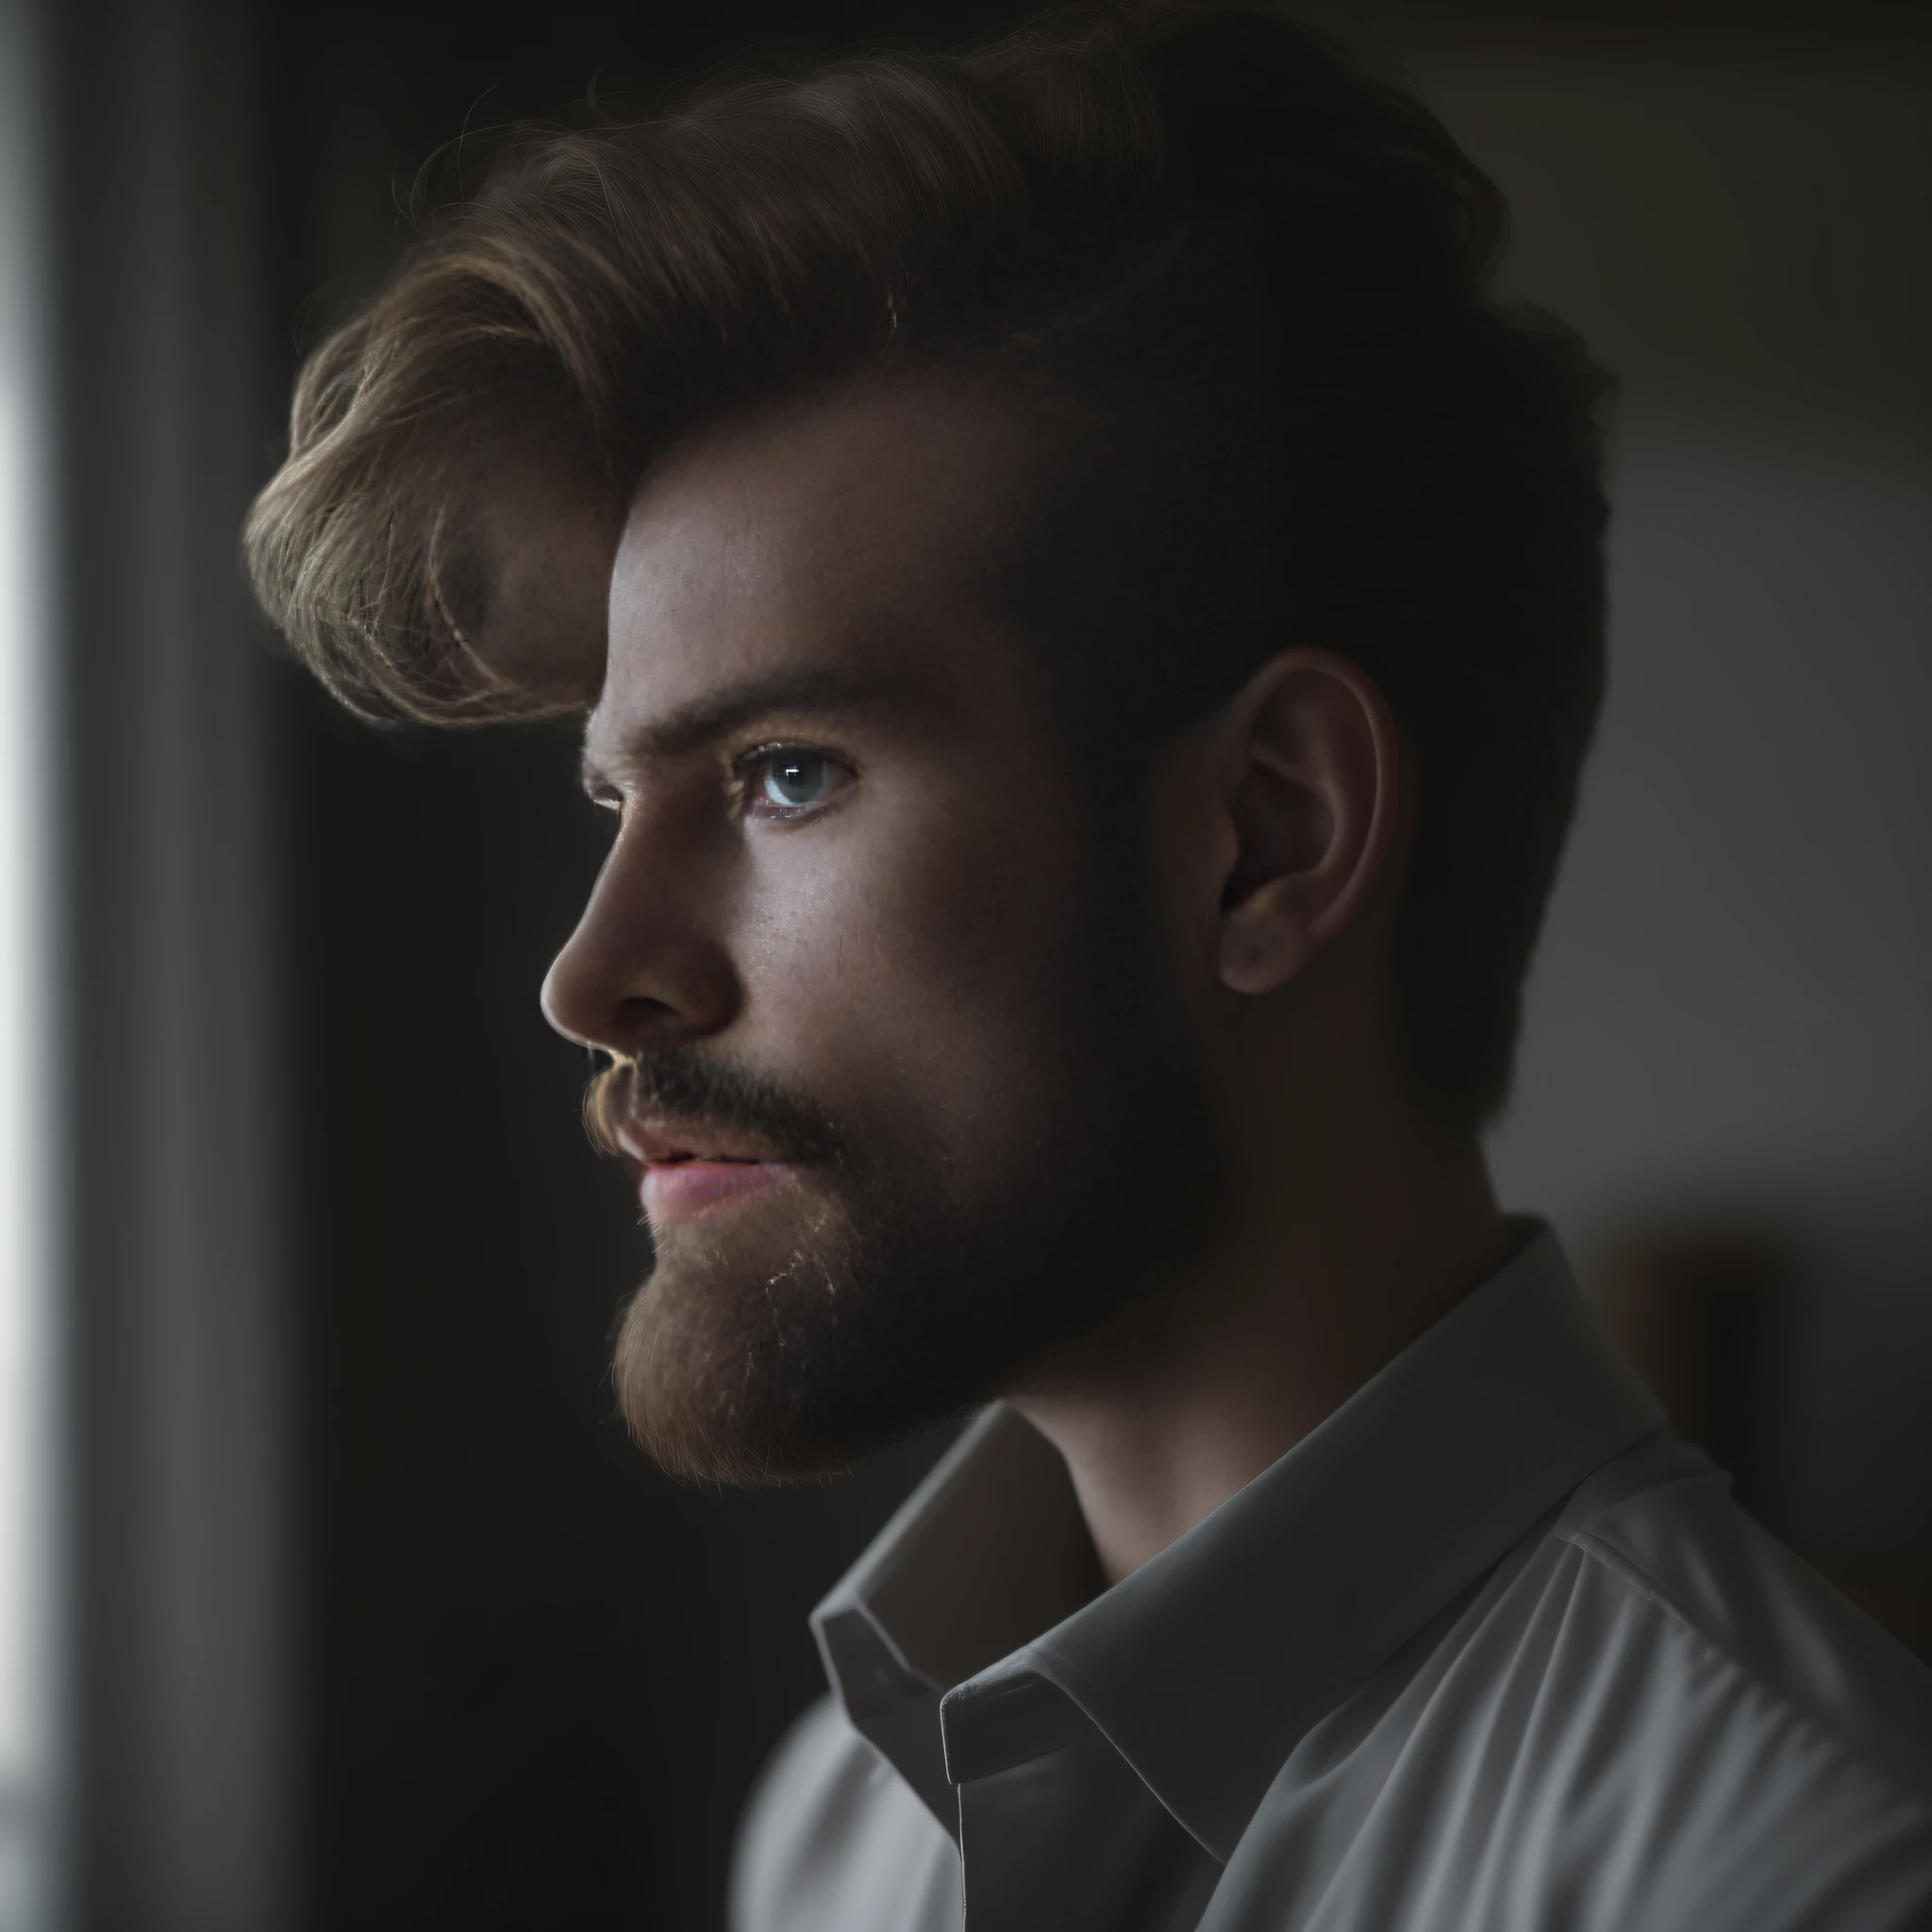 一名來自丹麥的 23 歲男子, 男性, 有鬍子的, 關鍵鬍鬚, 模型, 全身, 優雅的姿勢, 很漂亮, 看著鏡頭, 詳細影像, 超高畫質, 8K, 光線充足, 膠片顆粒, 完美照明